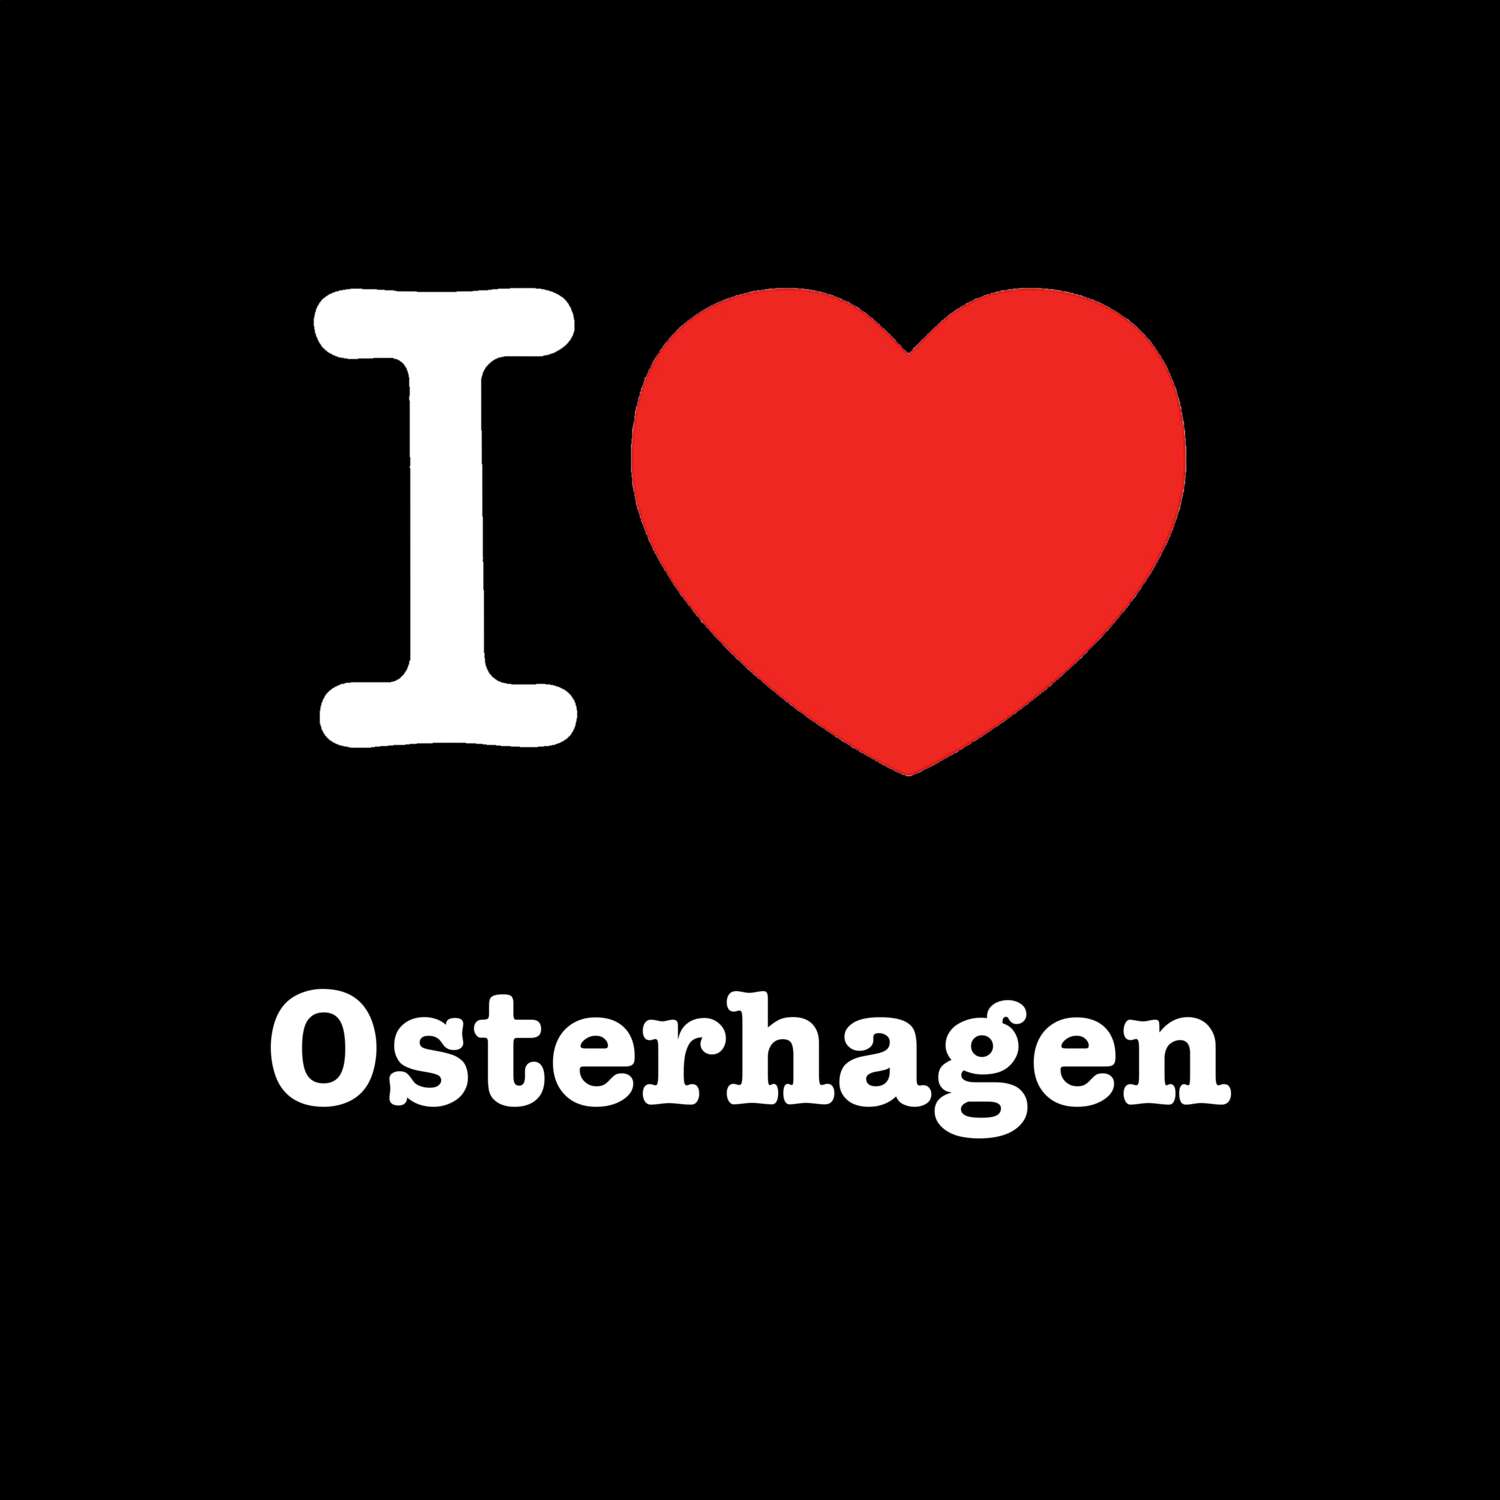 Osterhagen T-Shirt »I love«